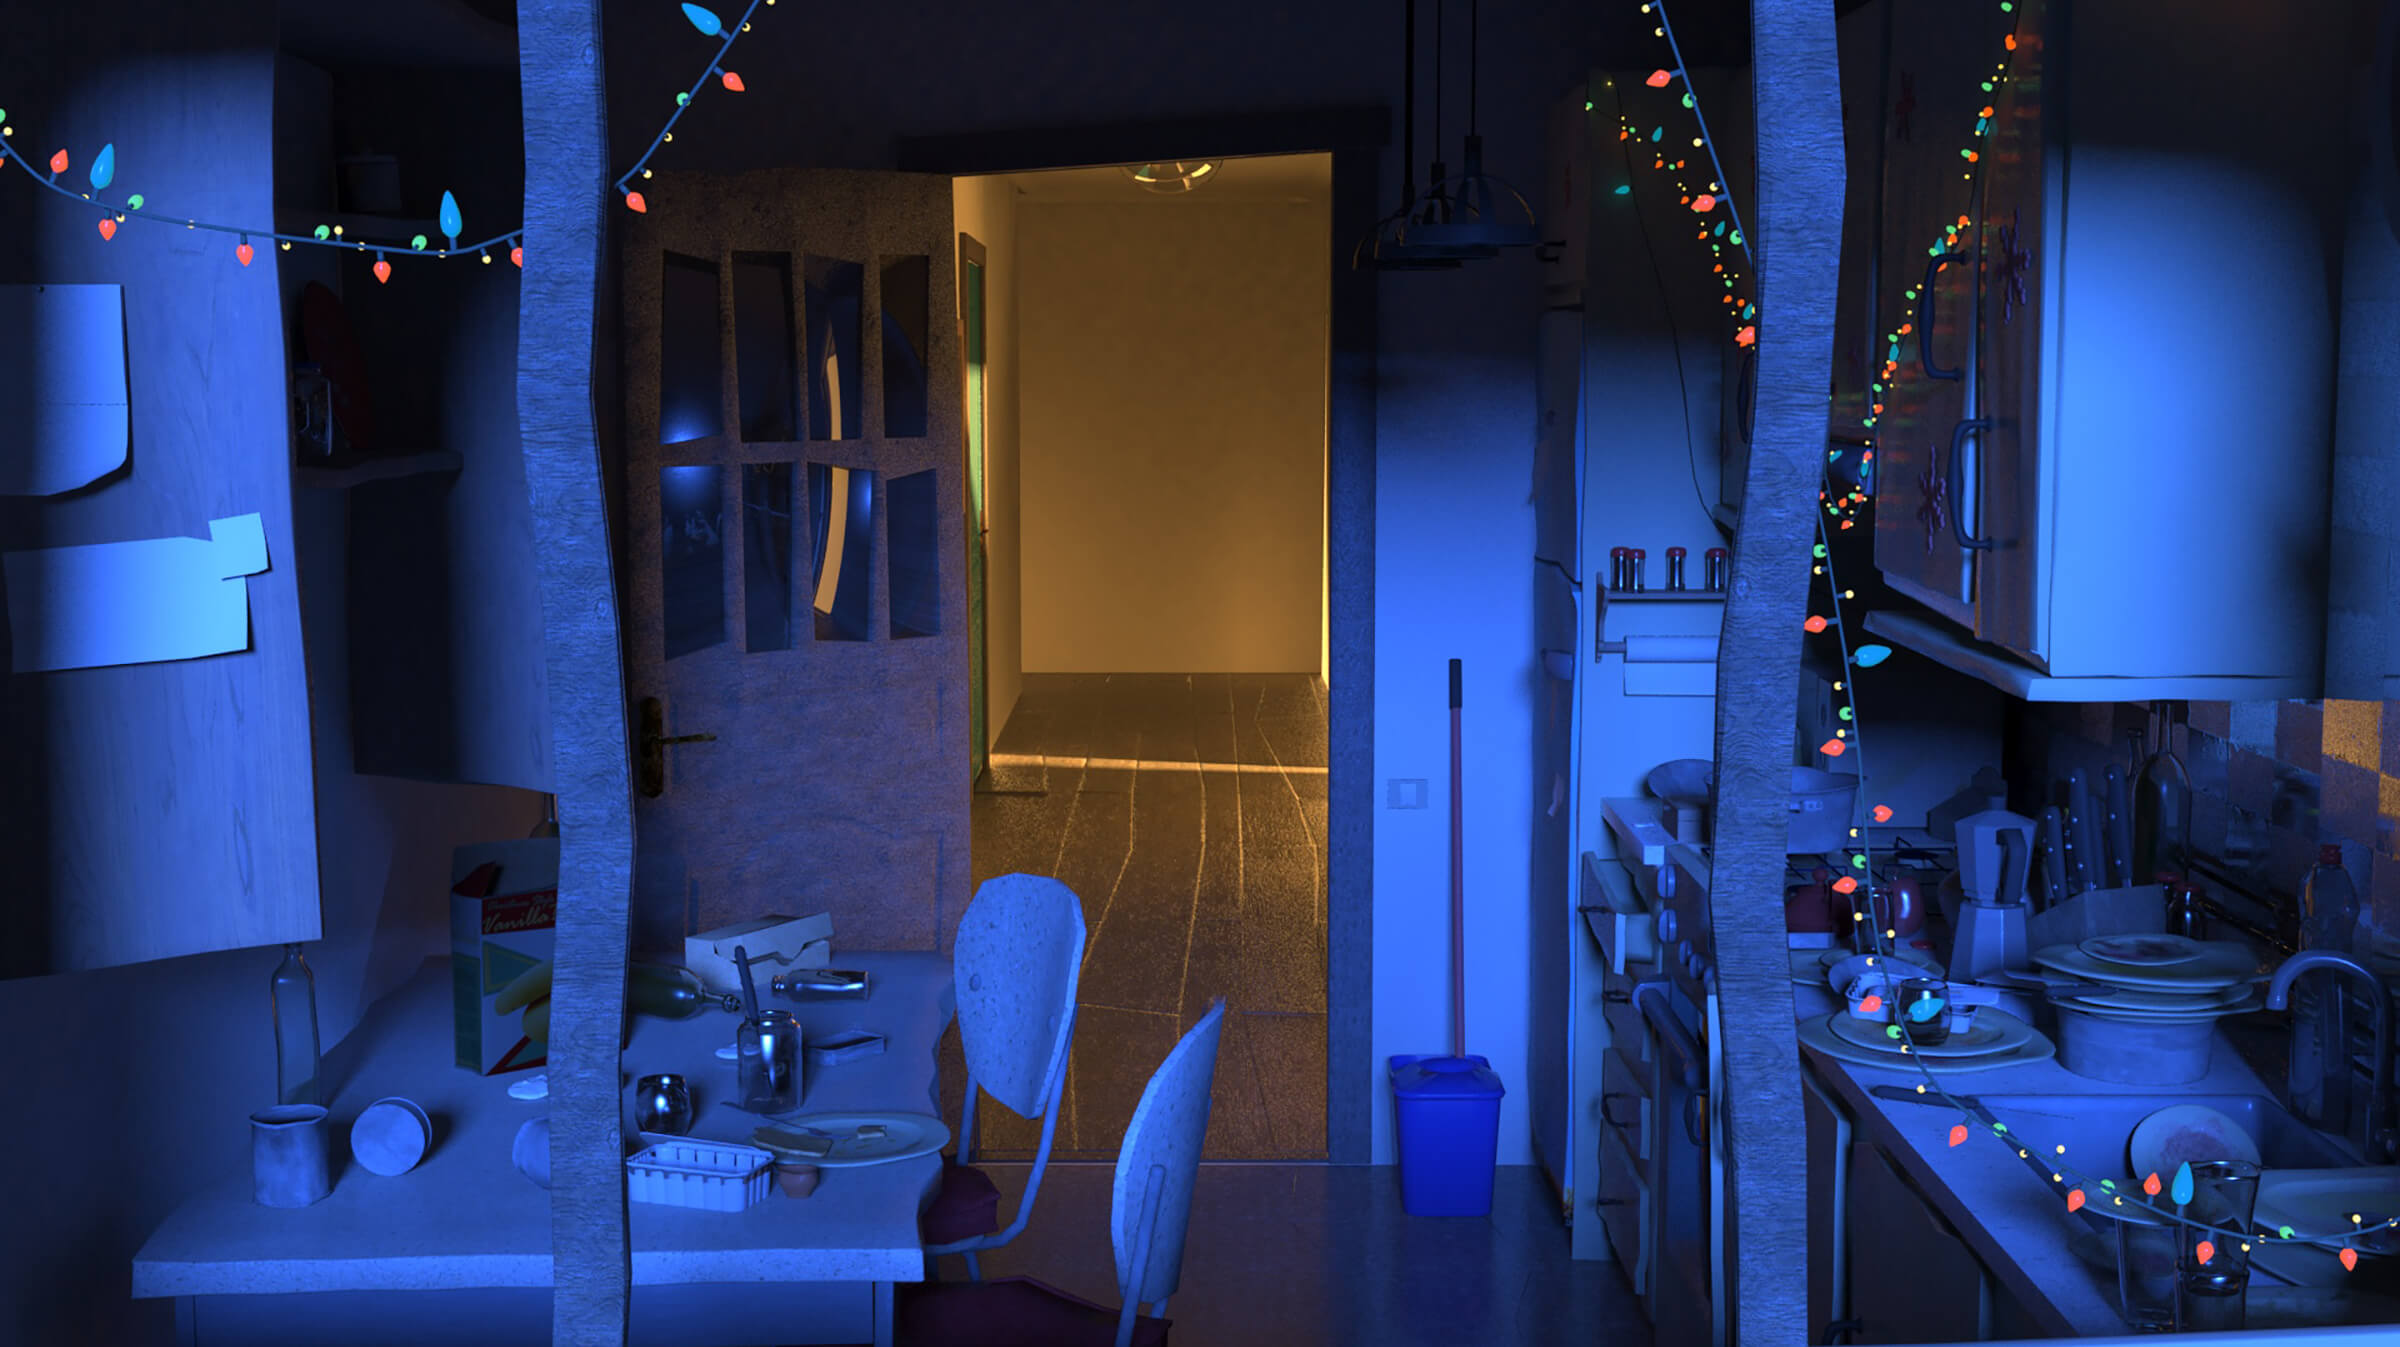 Una cocina oscura y desordenada decorada con luces festivas. Al fondo, una puerta abierta a un pasillo iluminado.